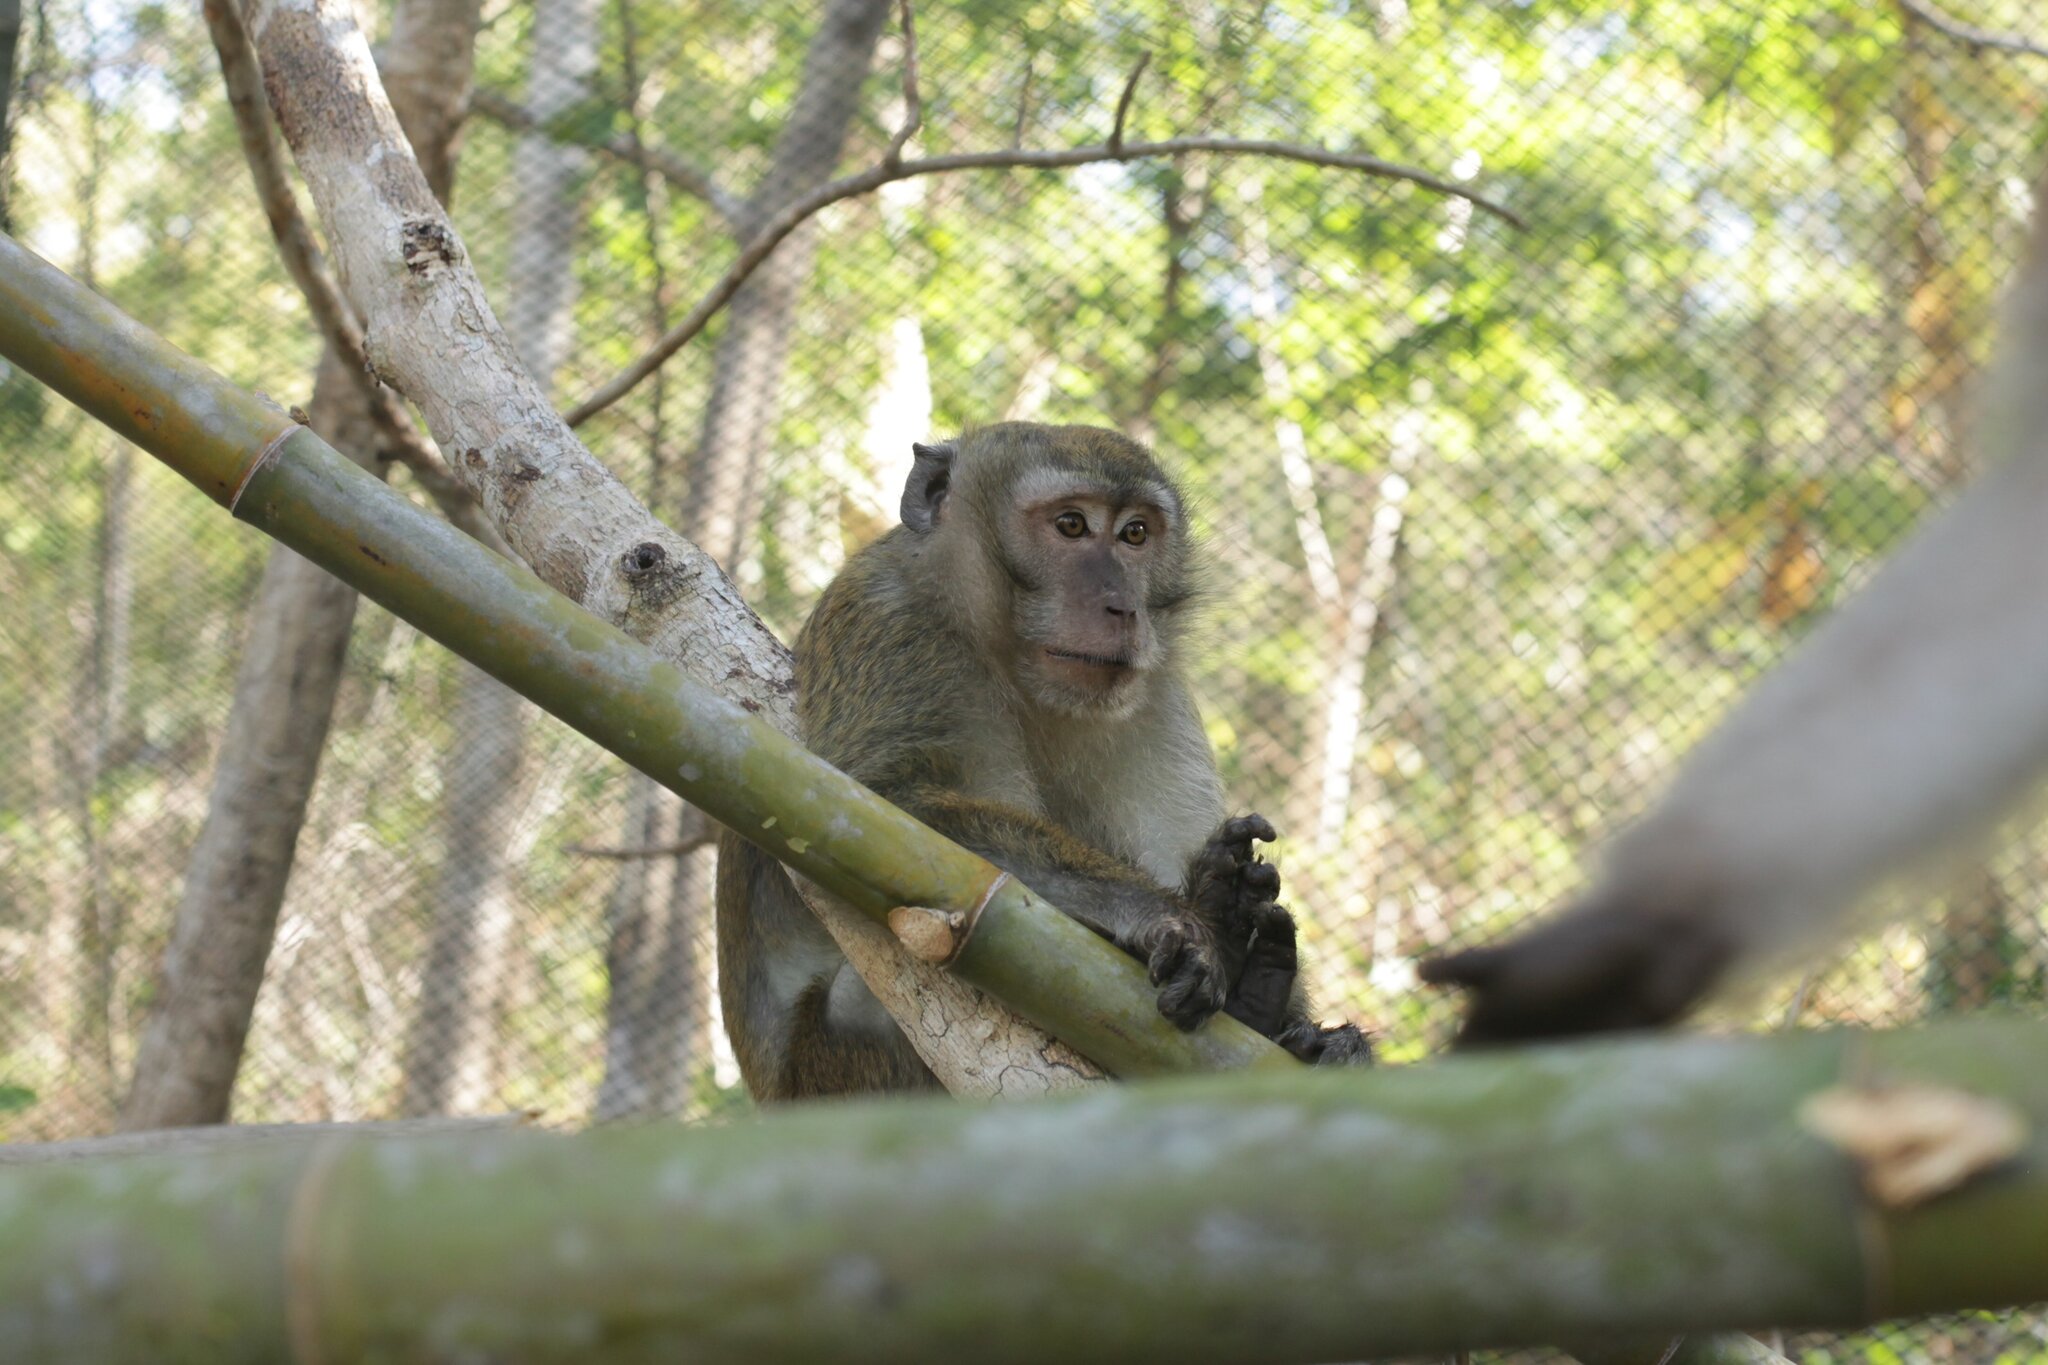 Nasib Monyet Ekor Panjang Kini Makin Terancam